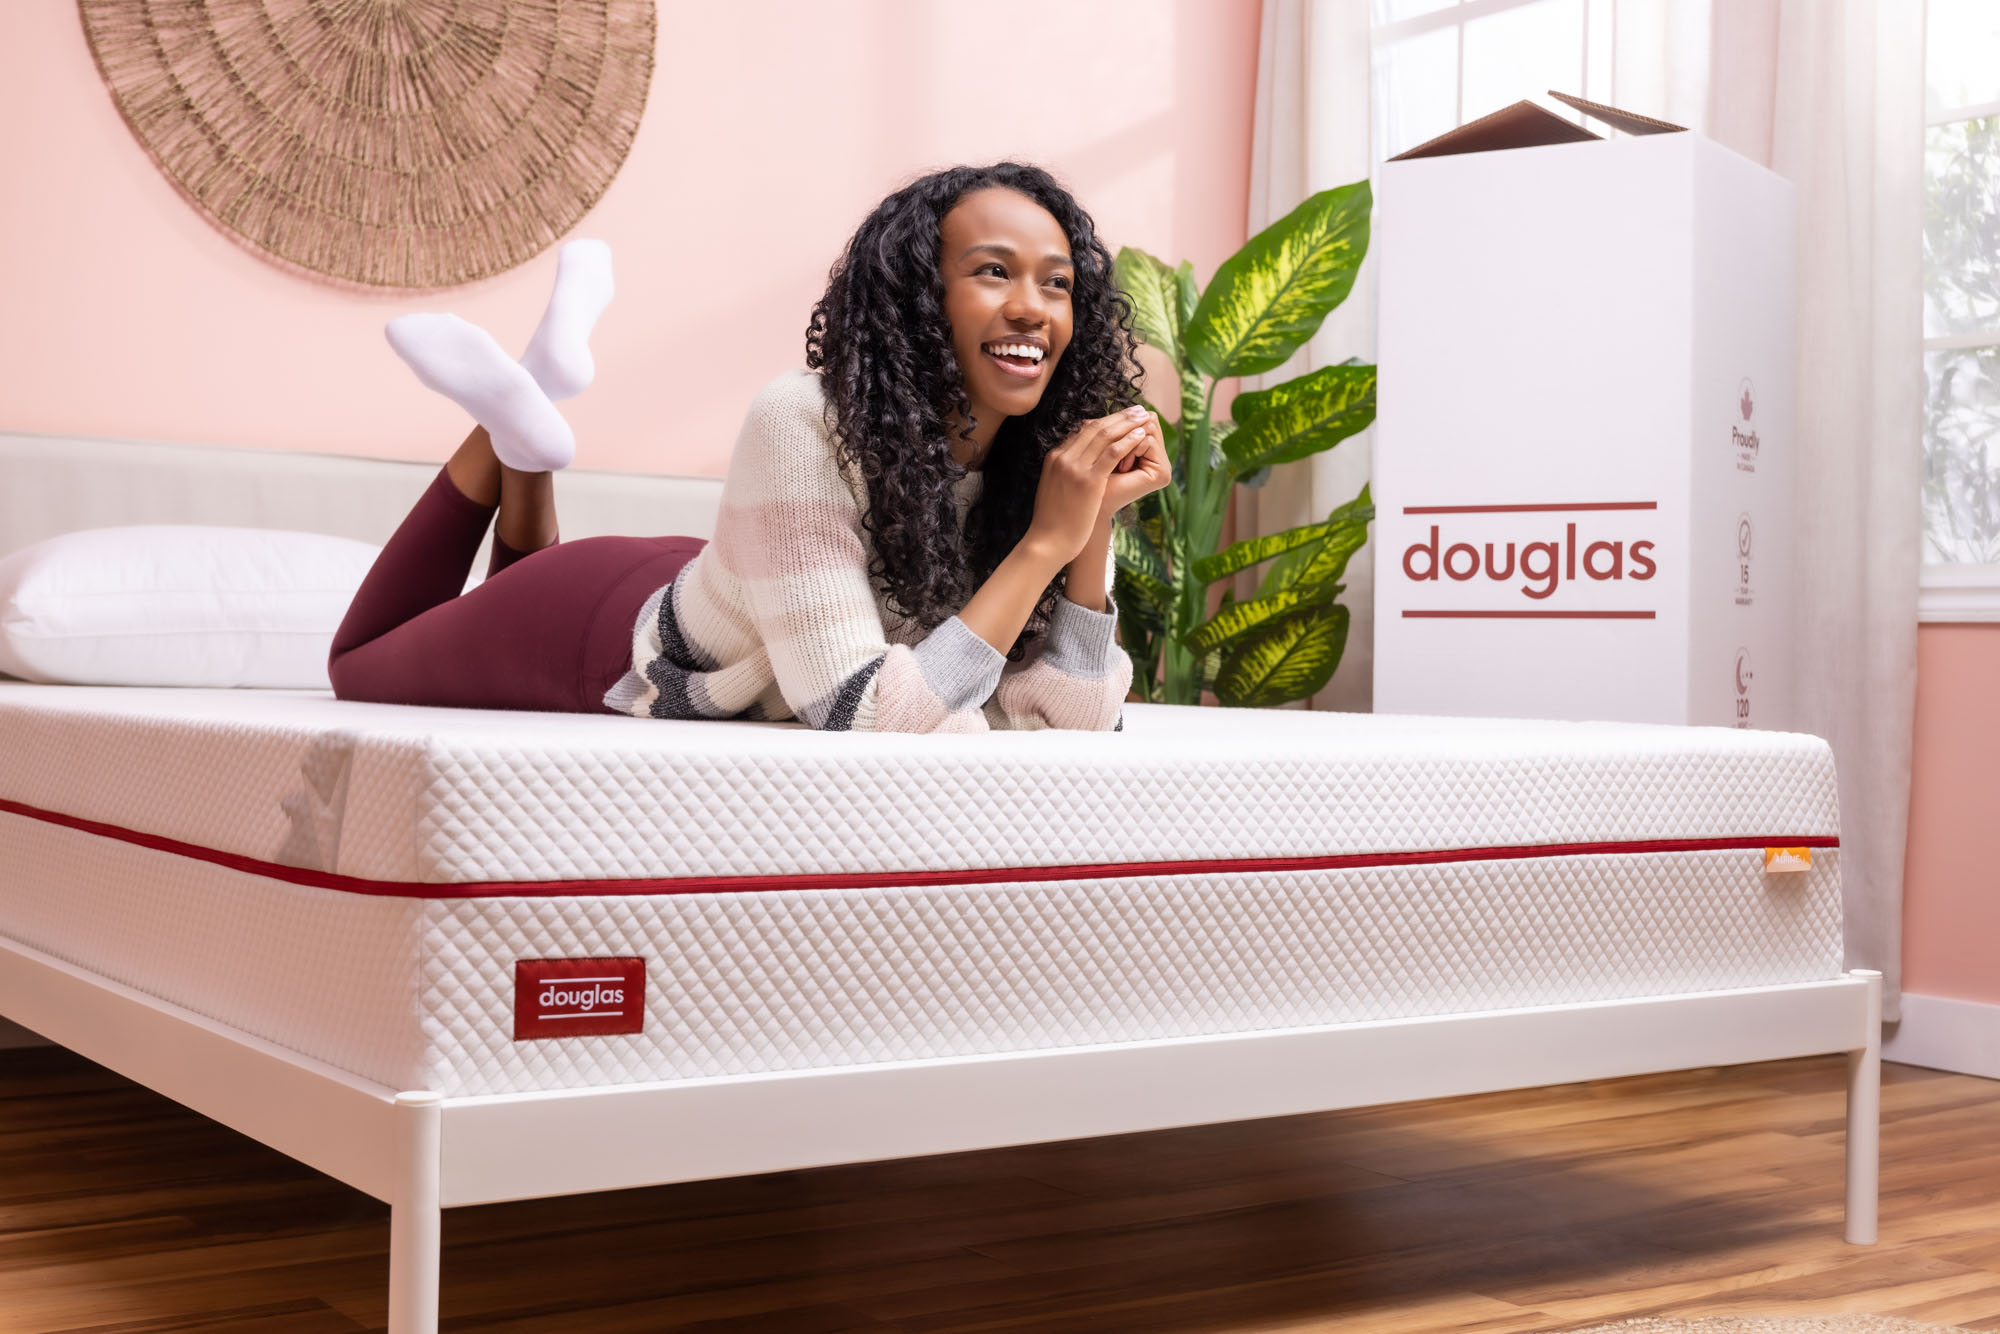 woman on douglas mattress using cellphone